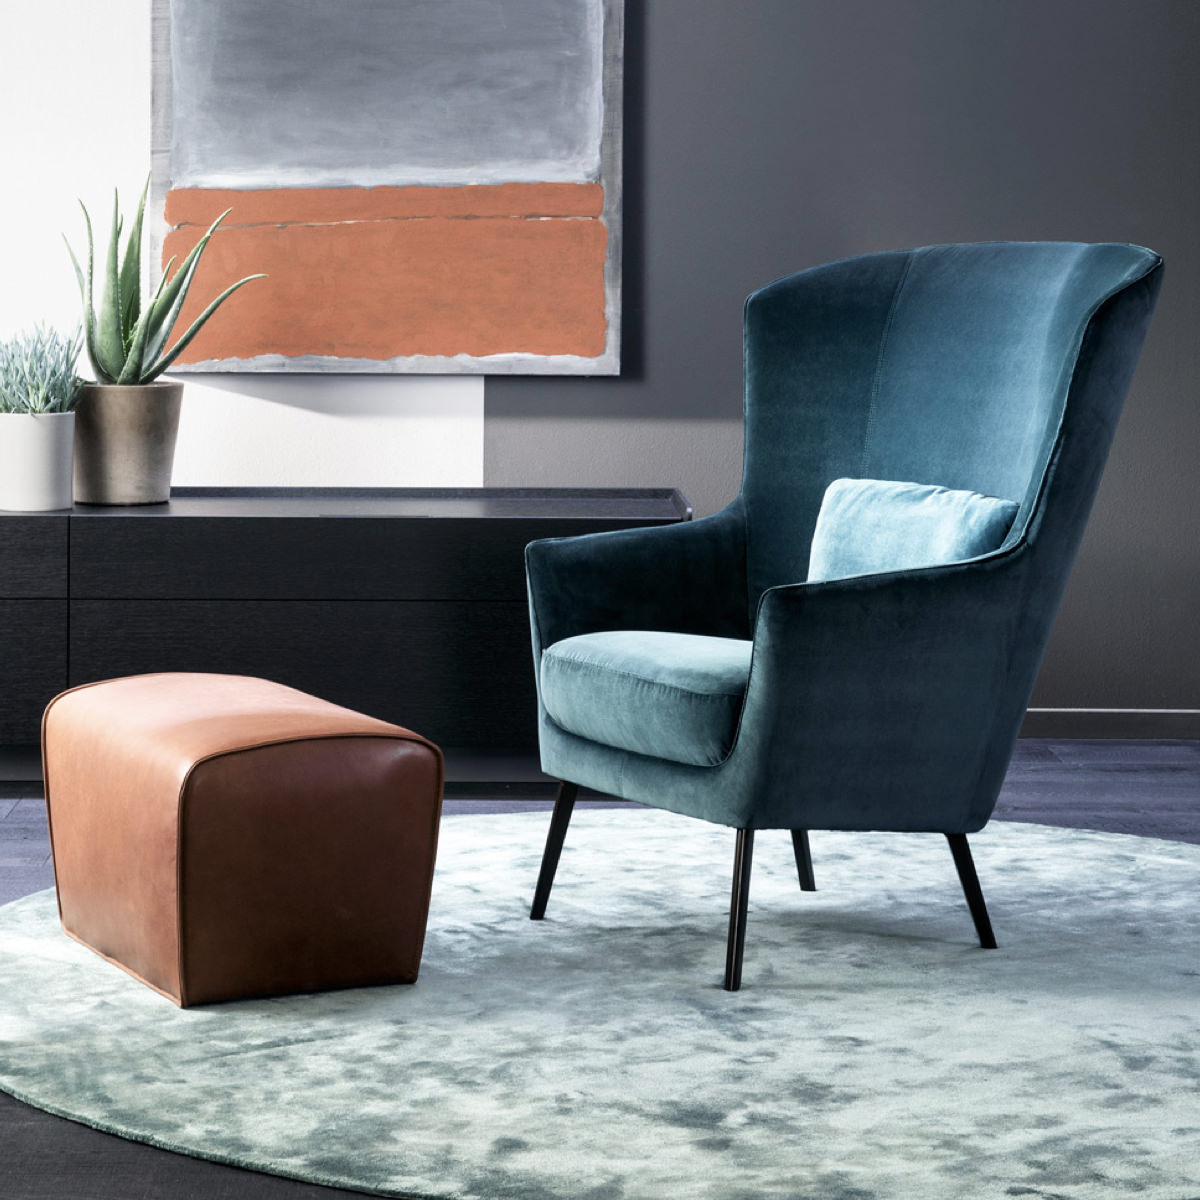 luxury leather foot-stool